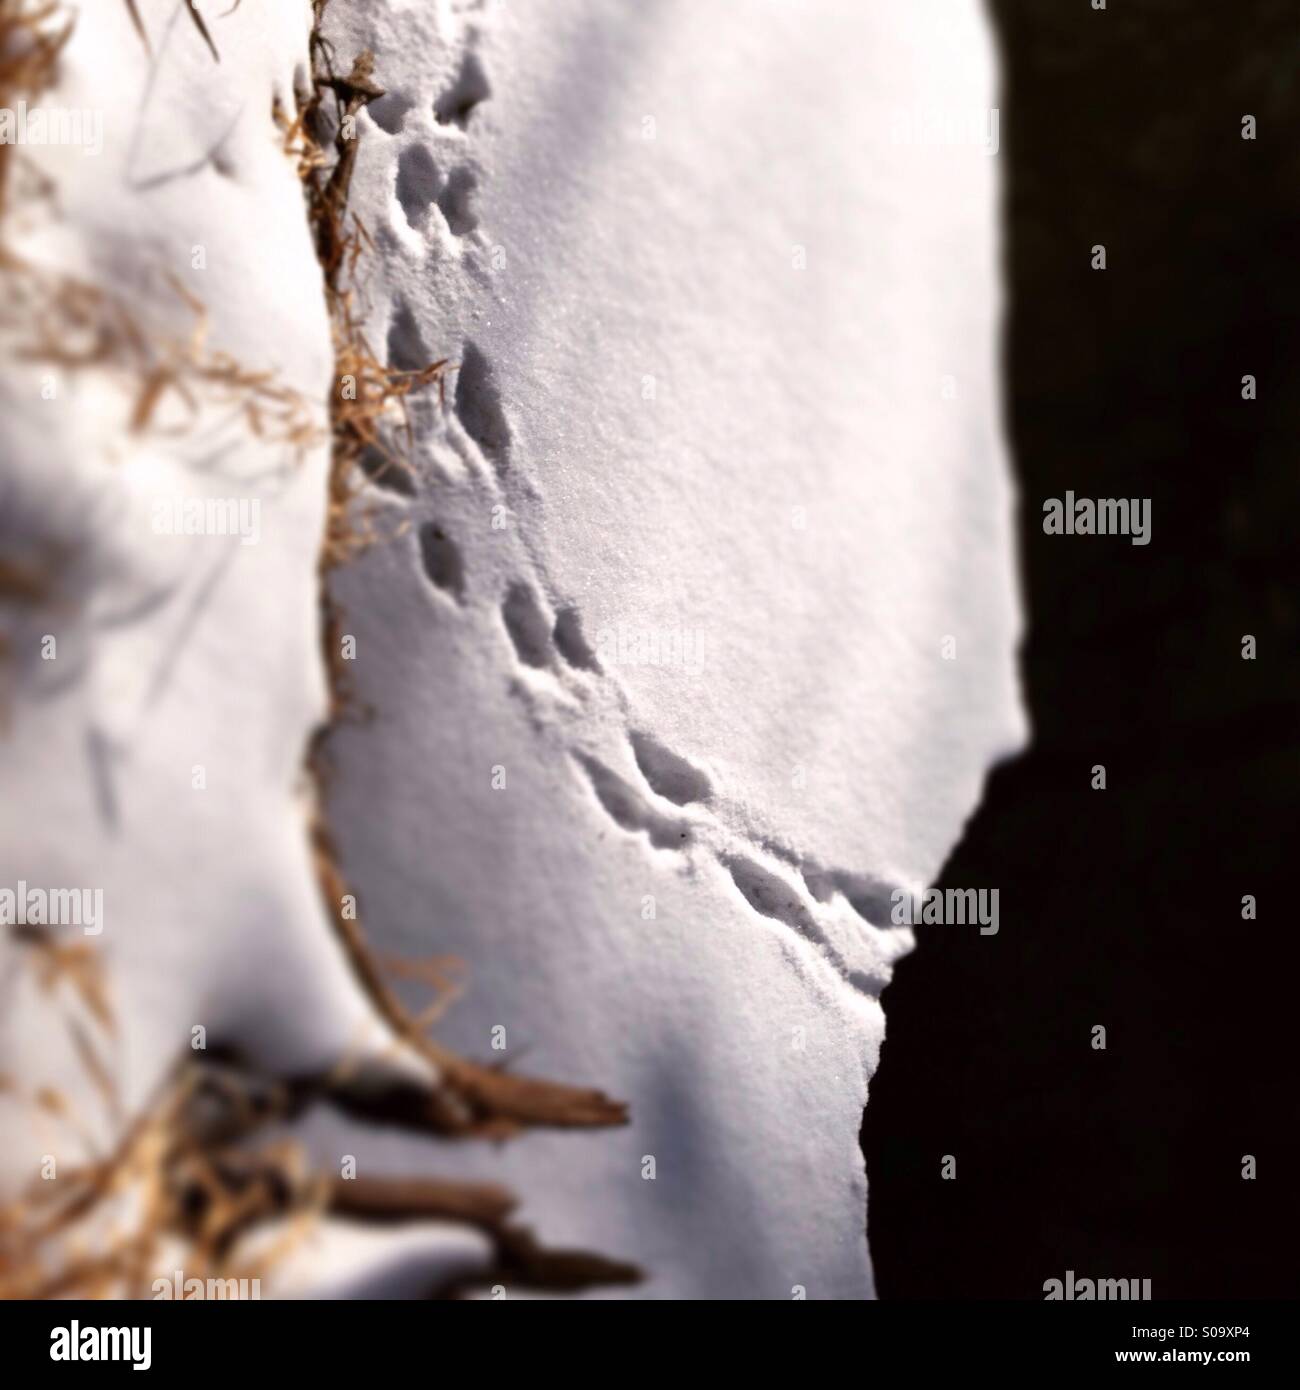 Huellas de animales originarios de Creek, moviéndose en la nieve Foto de stock